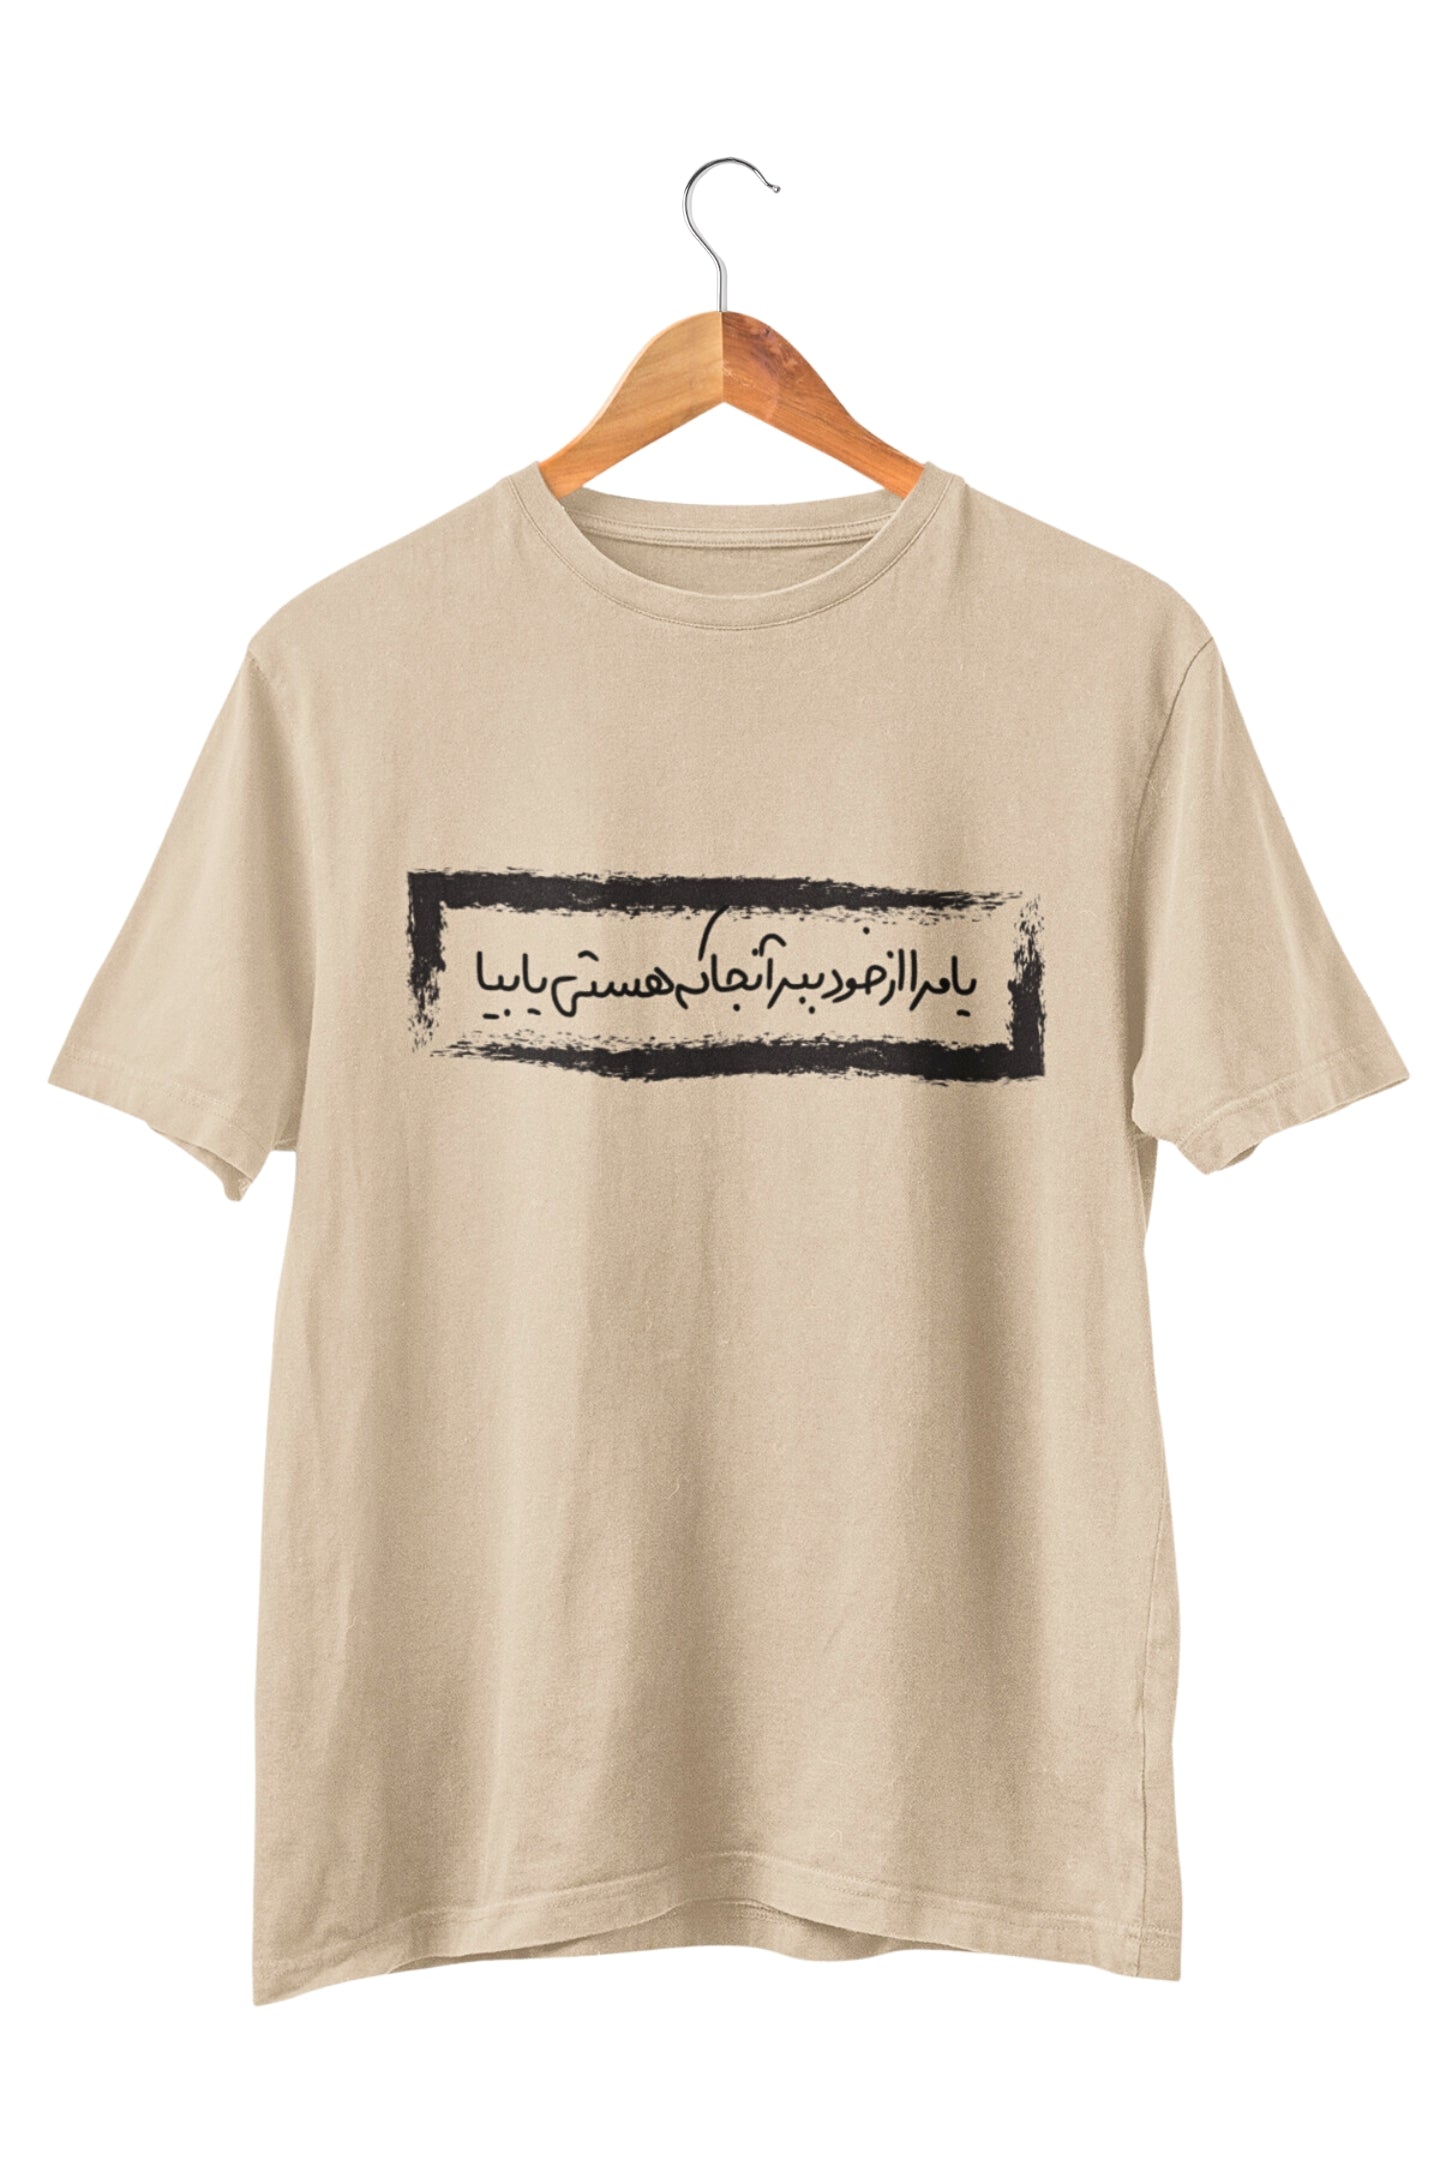 Dehlavi Poem T-shirt - Veesheh